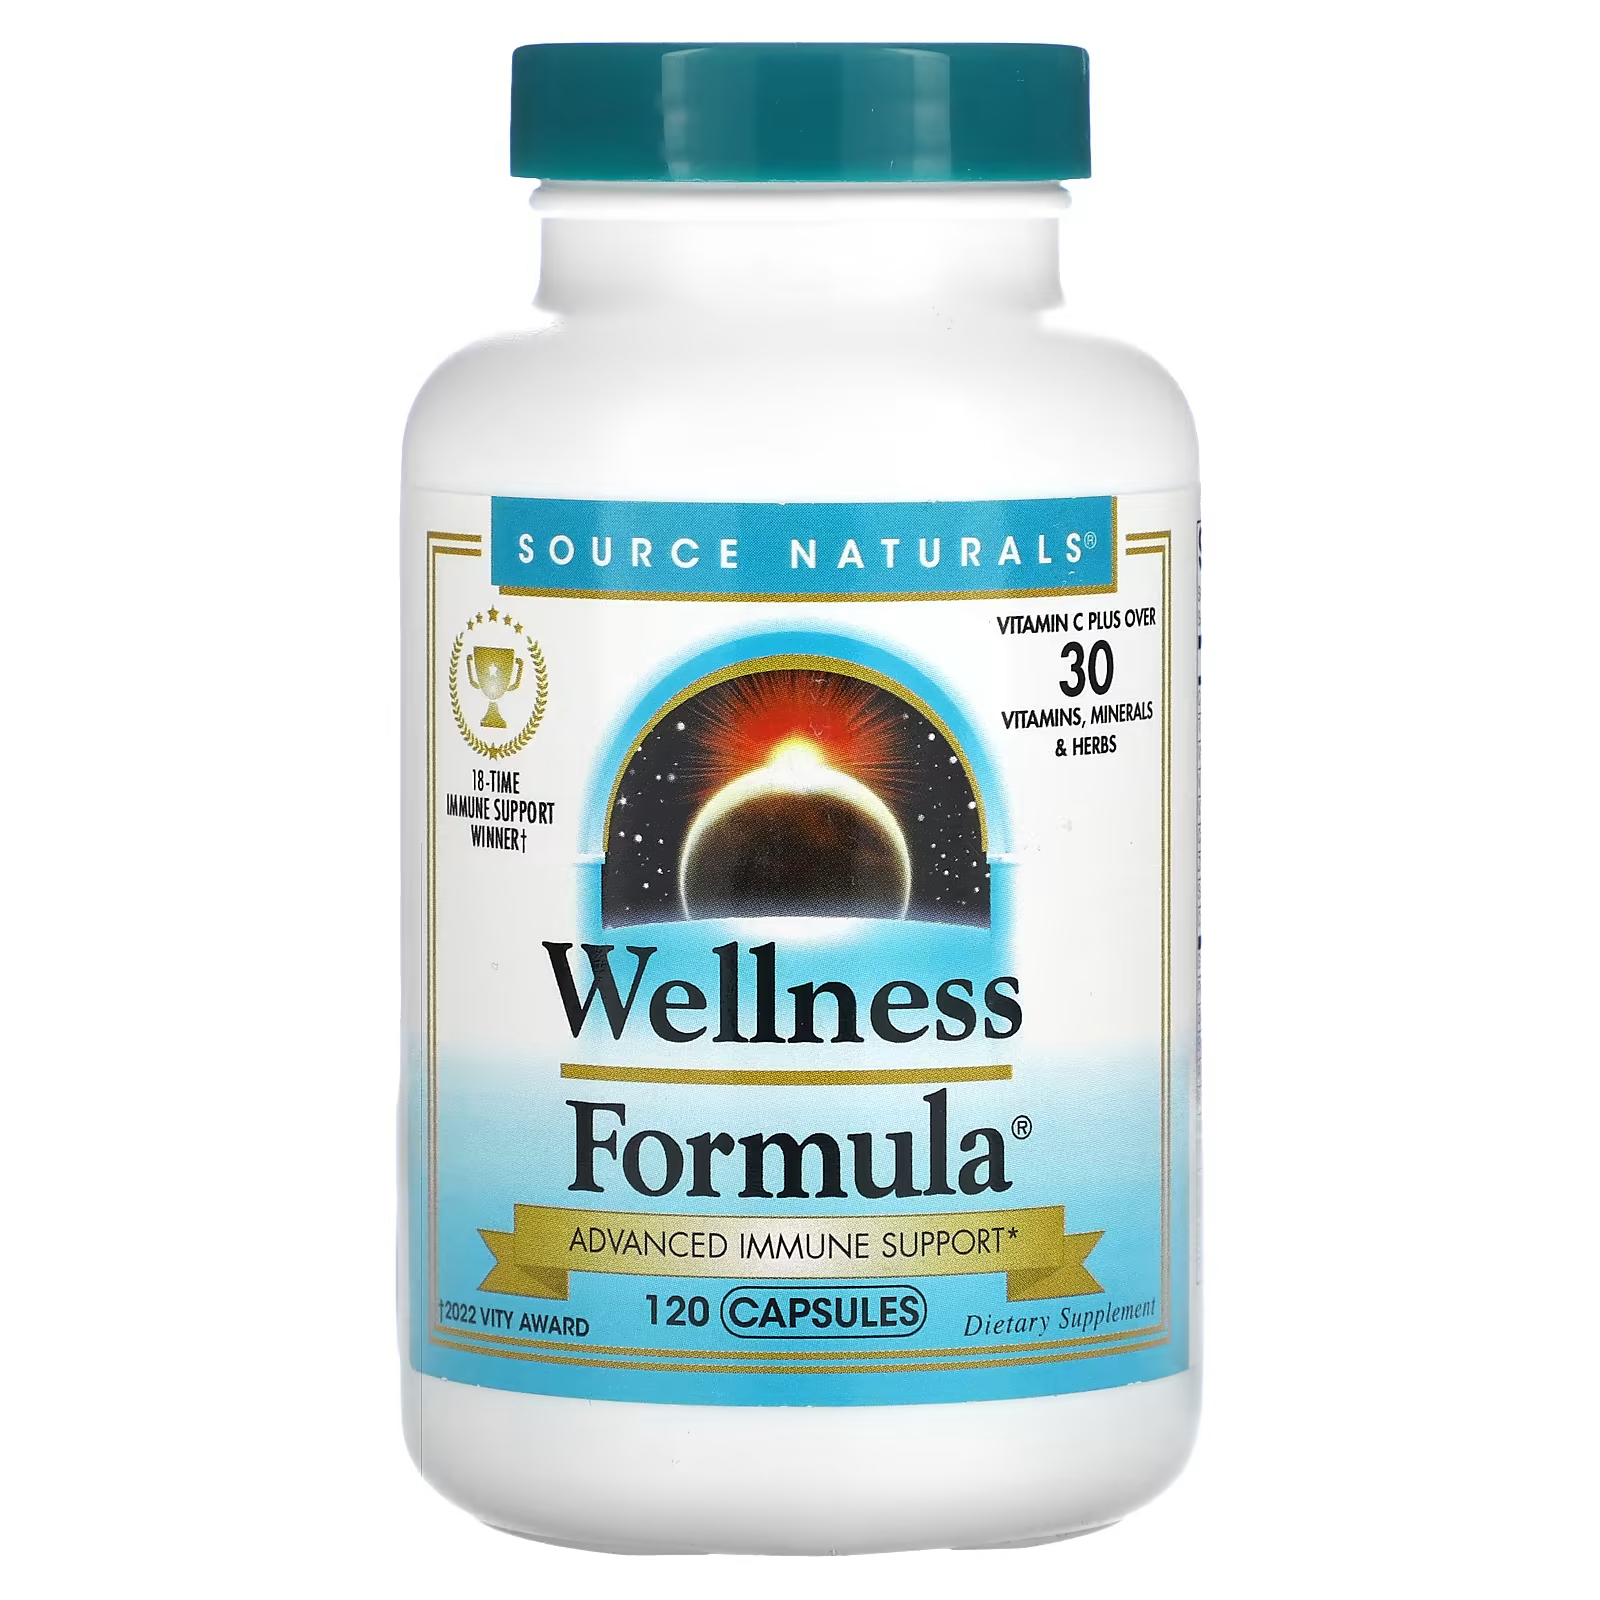 Пищевая добавка Source Naturals Wellness Formula расширенная поддержка иммунитета, 120 капсул source naturals wellness formula 120 капсул